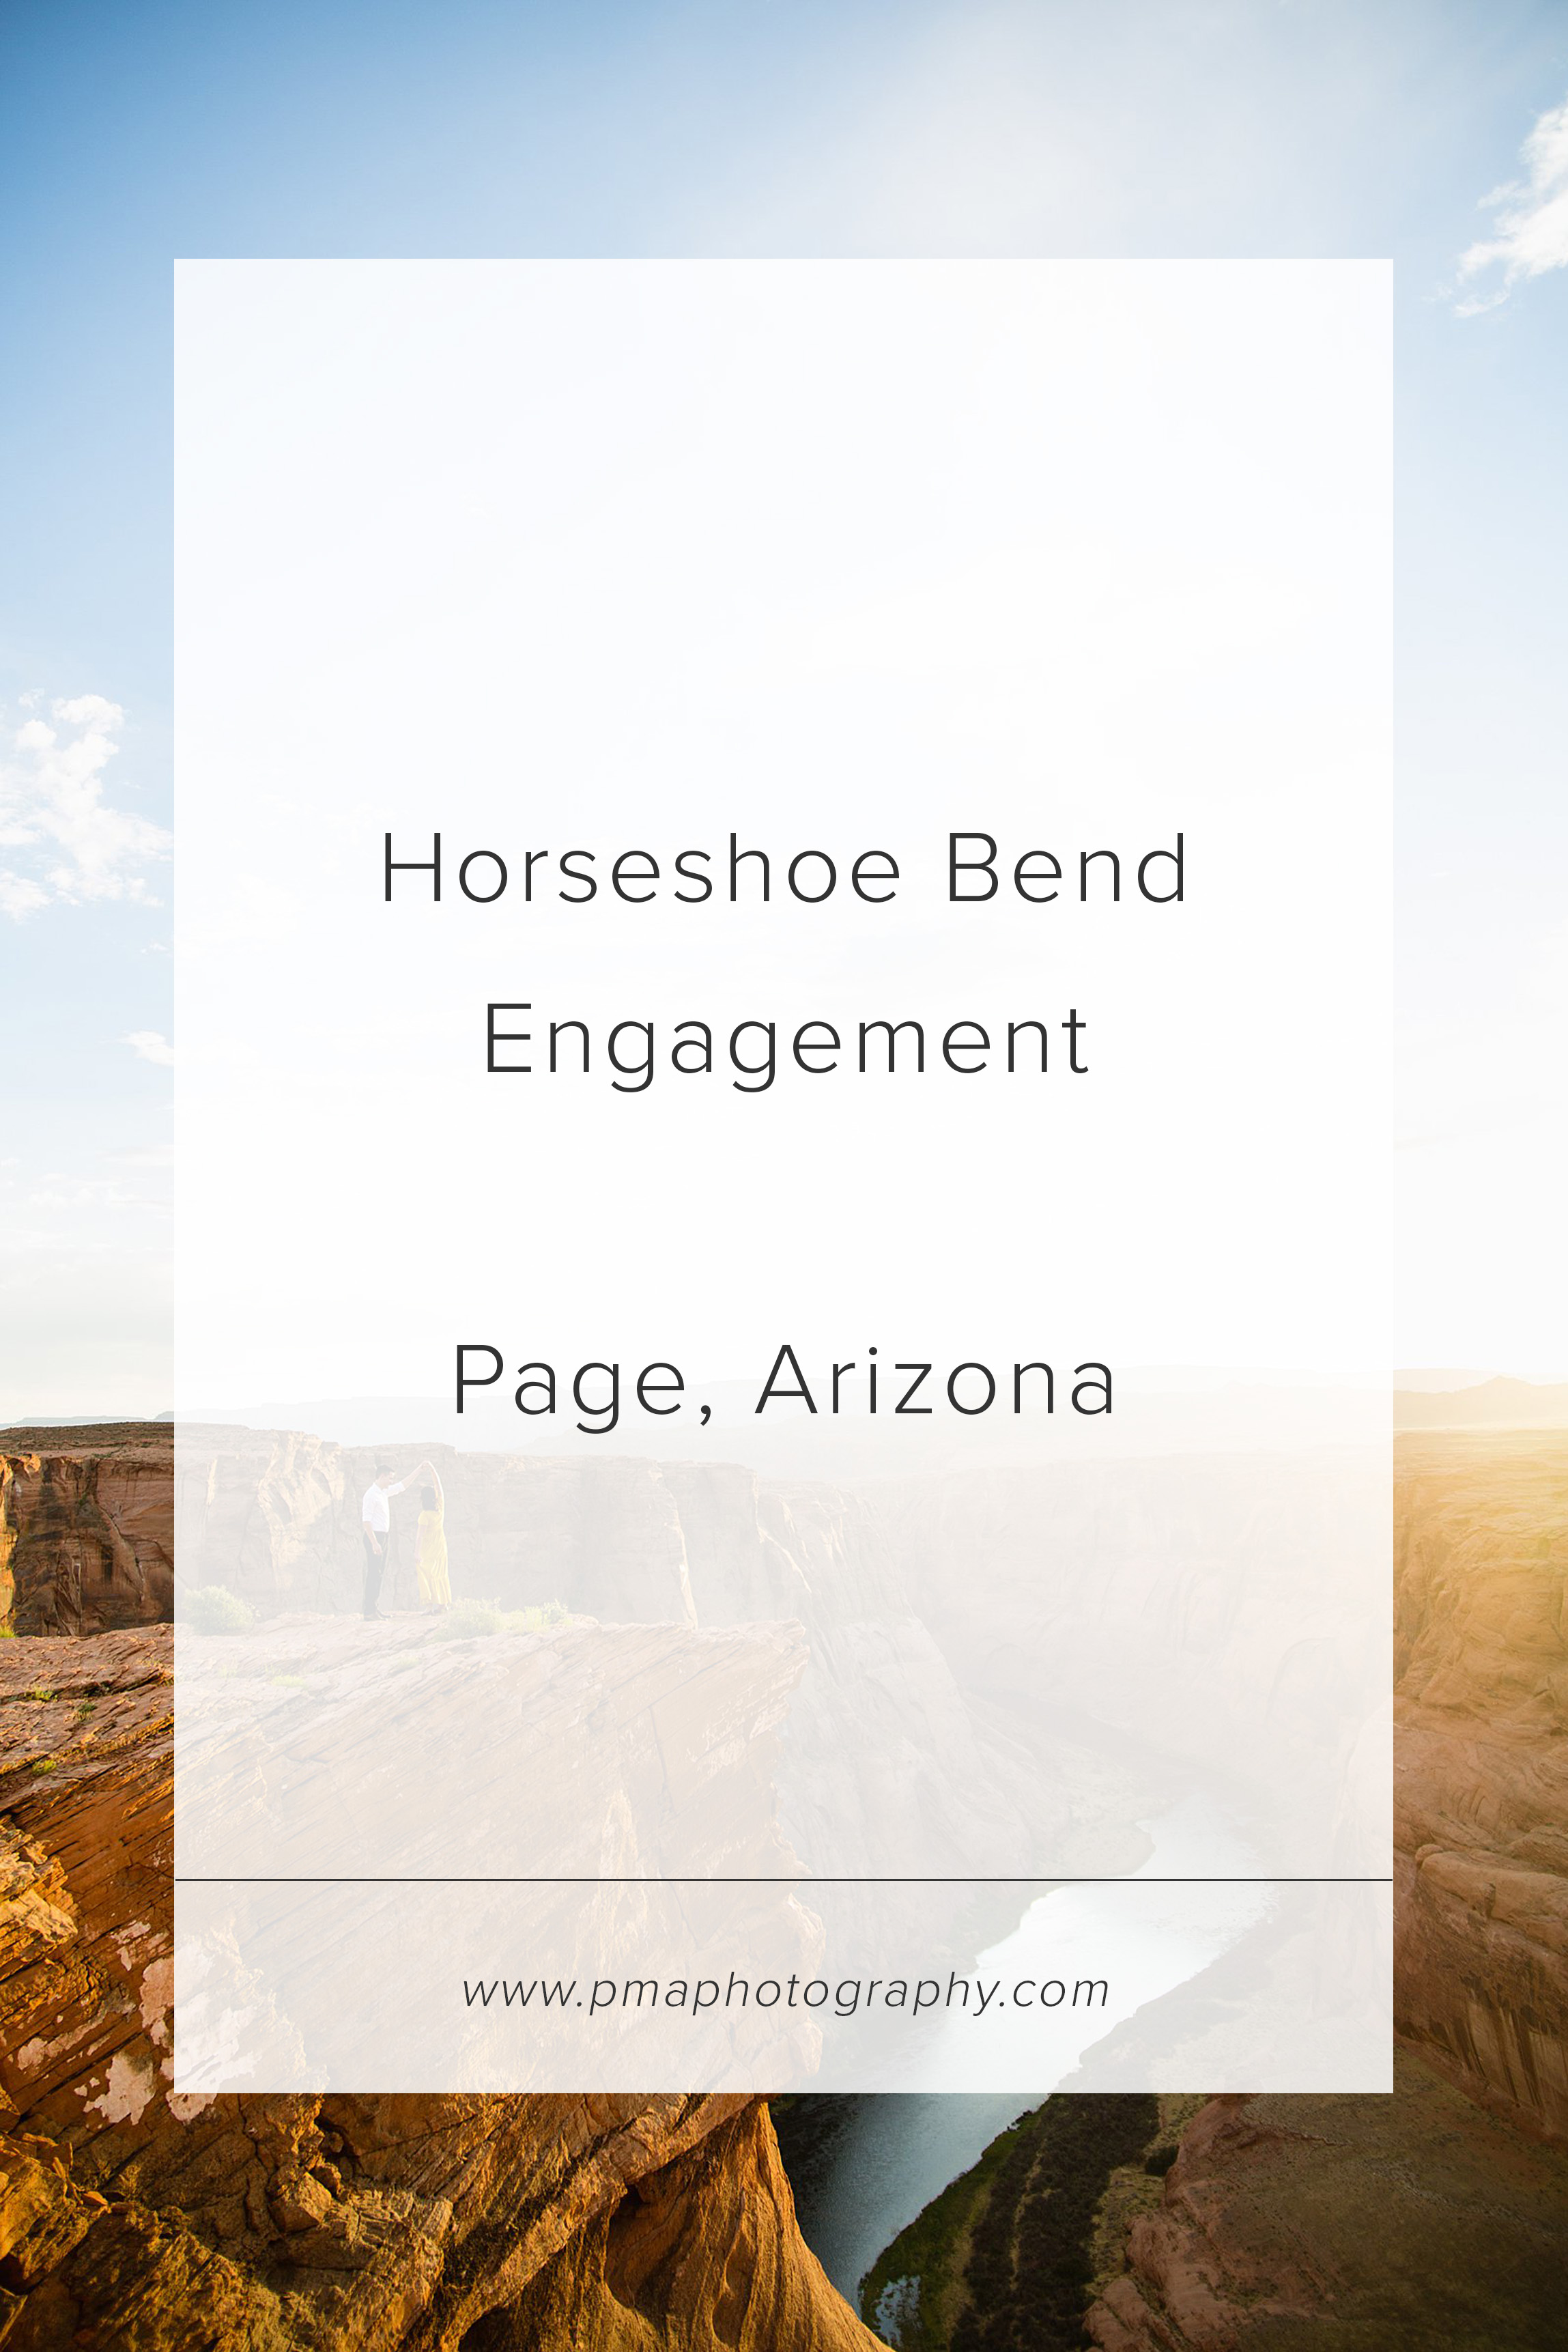 Horseshoe bend engagement session by Arizona engagement photographer PMA Photography.